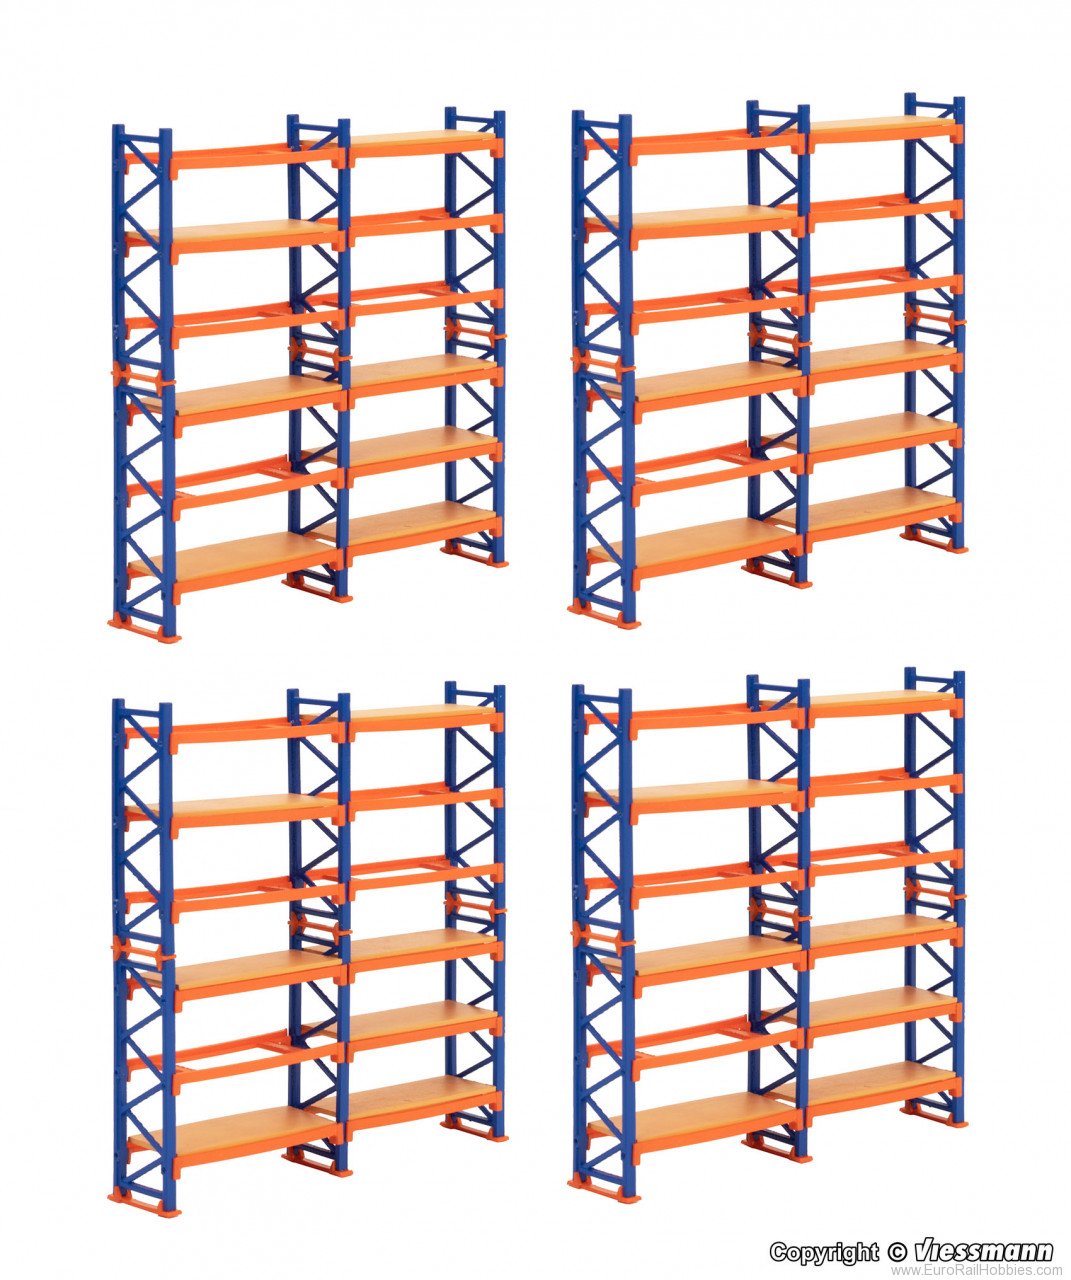 Kibri 38613 Deco-set Pallet shelving system, 4 pieces â